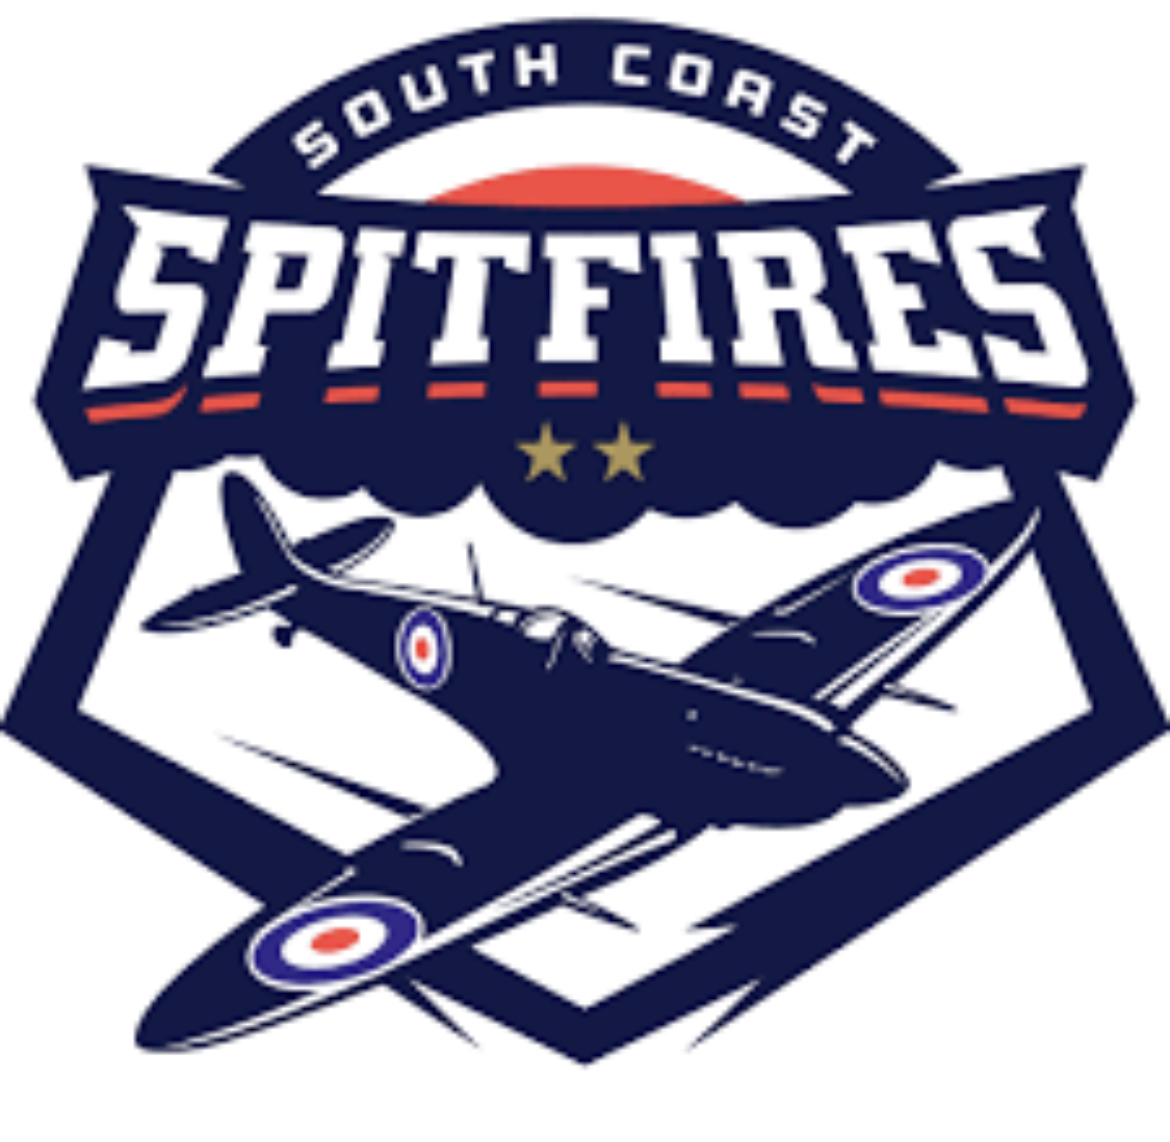 South Coast Spitfires Logo